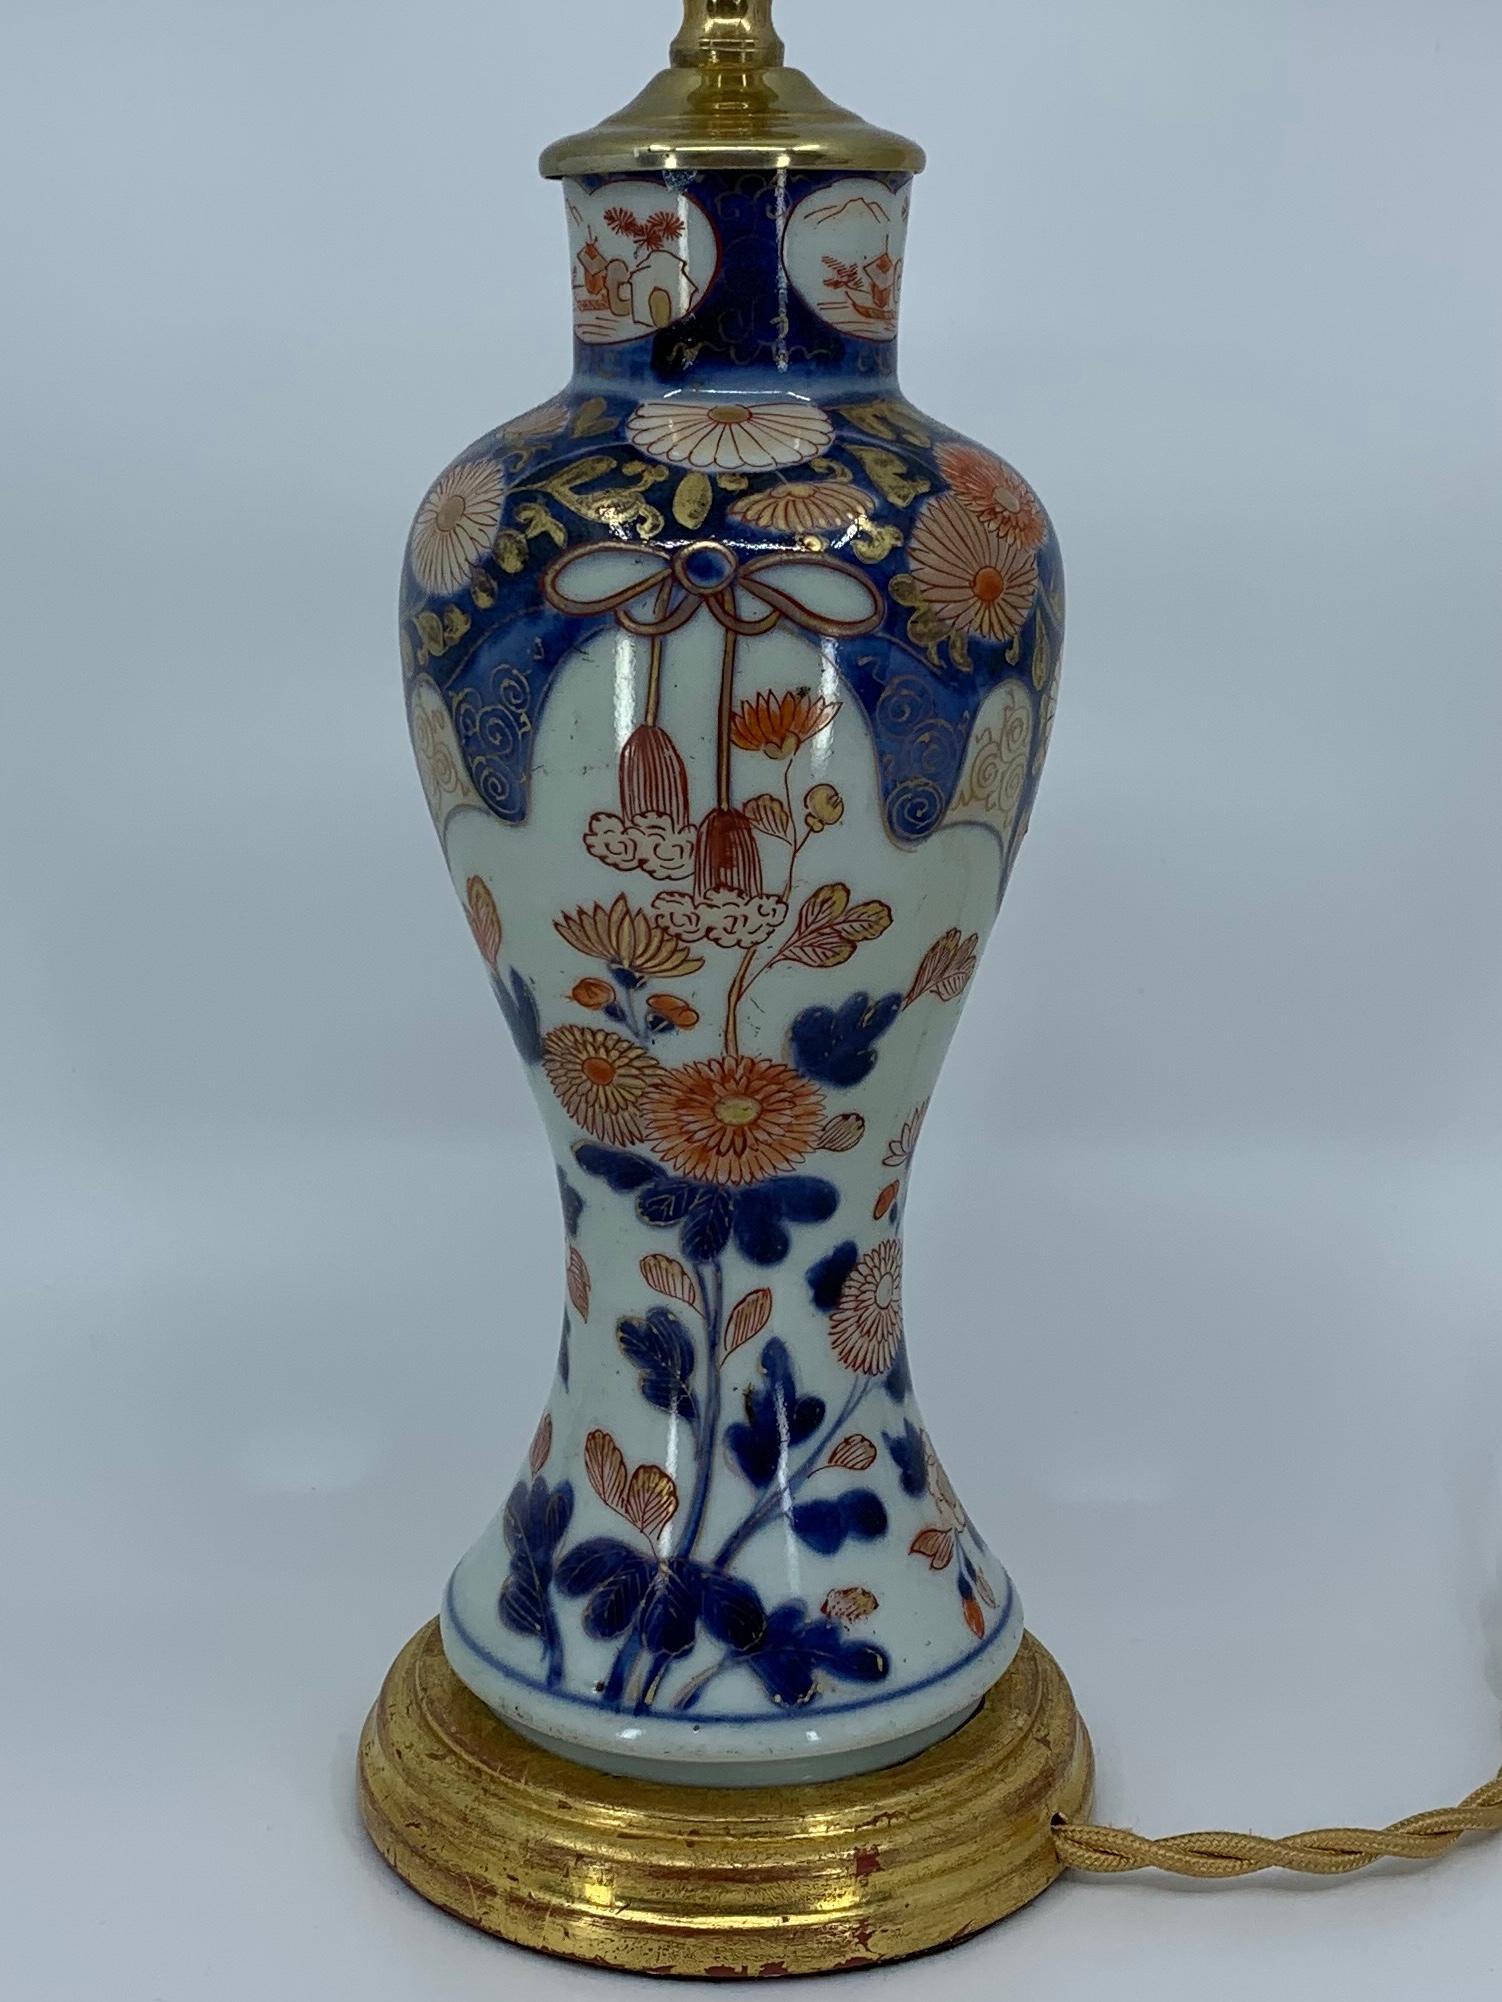 Lampe en porcelaine bleue, blanche, rouge et dorée sur base en bois doré à l'eau. Vase en porcelaine chinoise transformé en lampe en bleu, blanc, rouge et floral doré sur base dorée à l'eau. Nouvellement électrifiée avec de la soie dorée et un